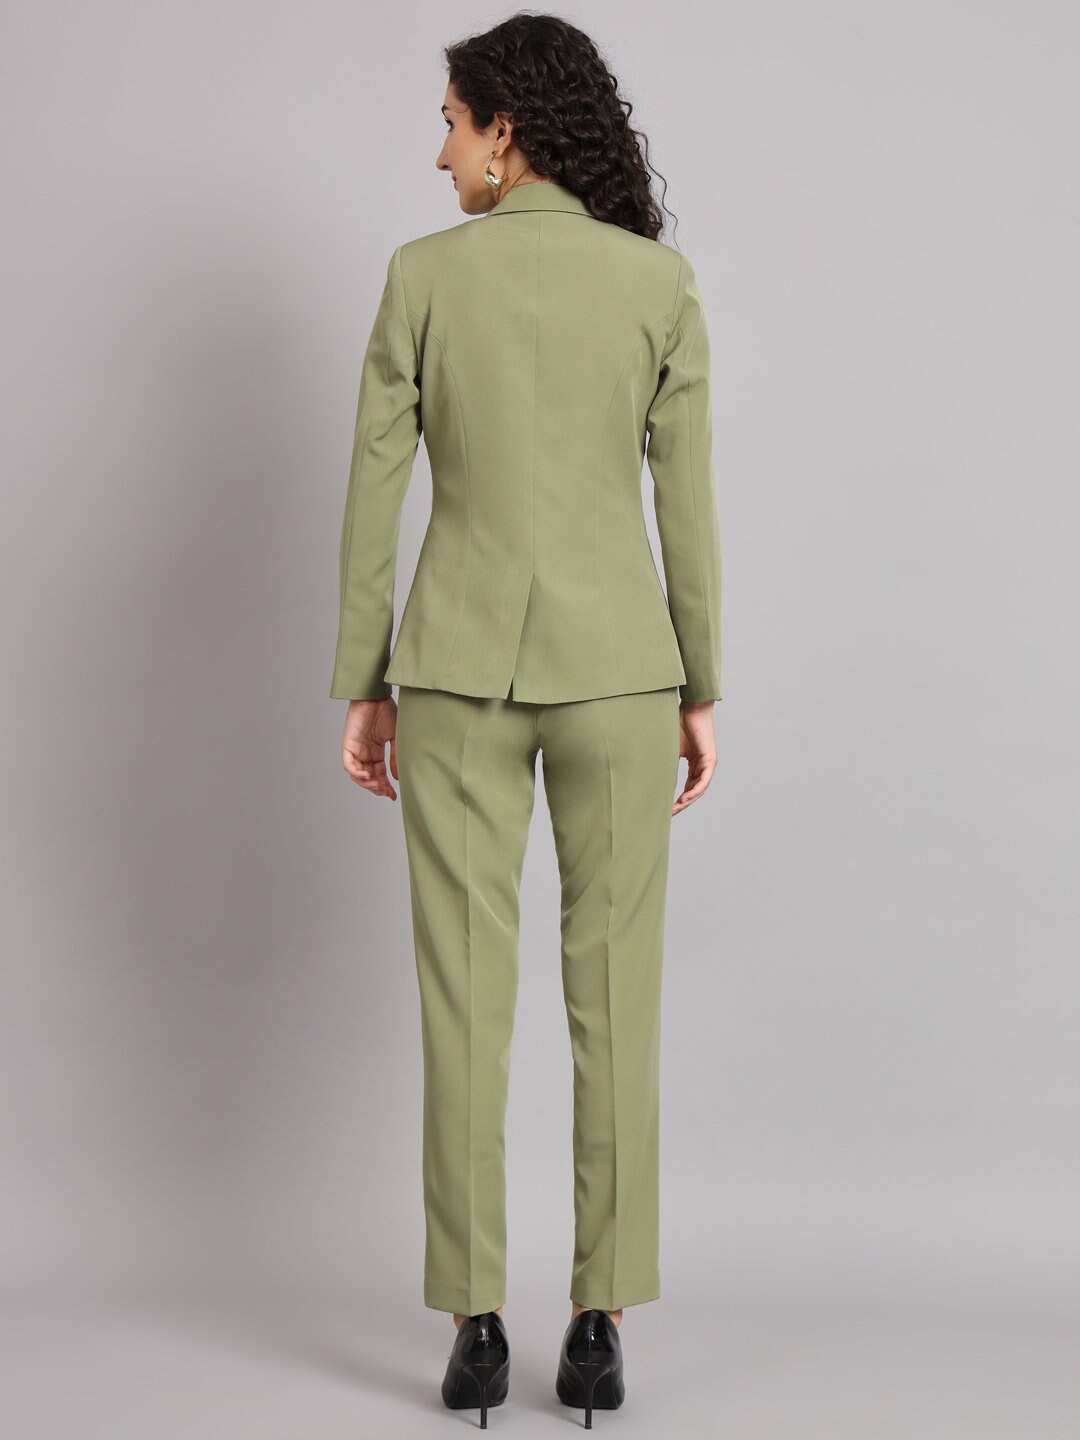 Olive Green Pantsuit for Women, 2 Piece Notchcollar Blazer & Trouser, Plus  Size Pant Suit, Wedding Coat Suit, Business Formal 